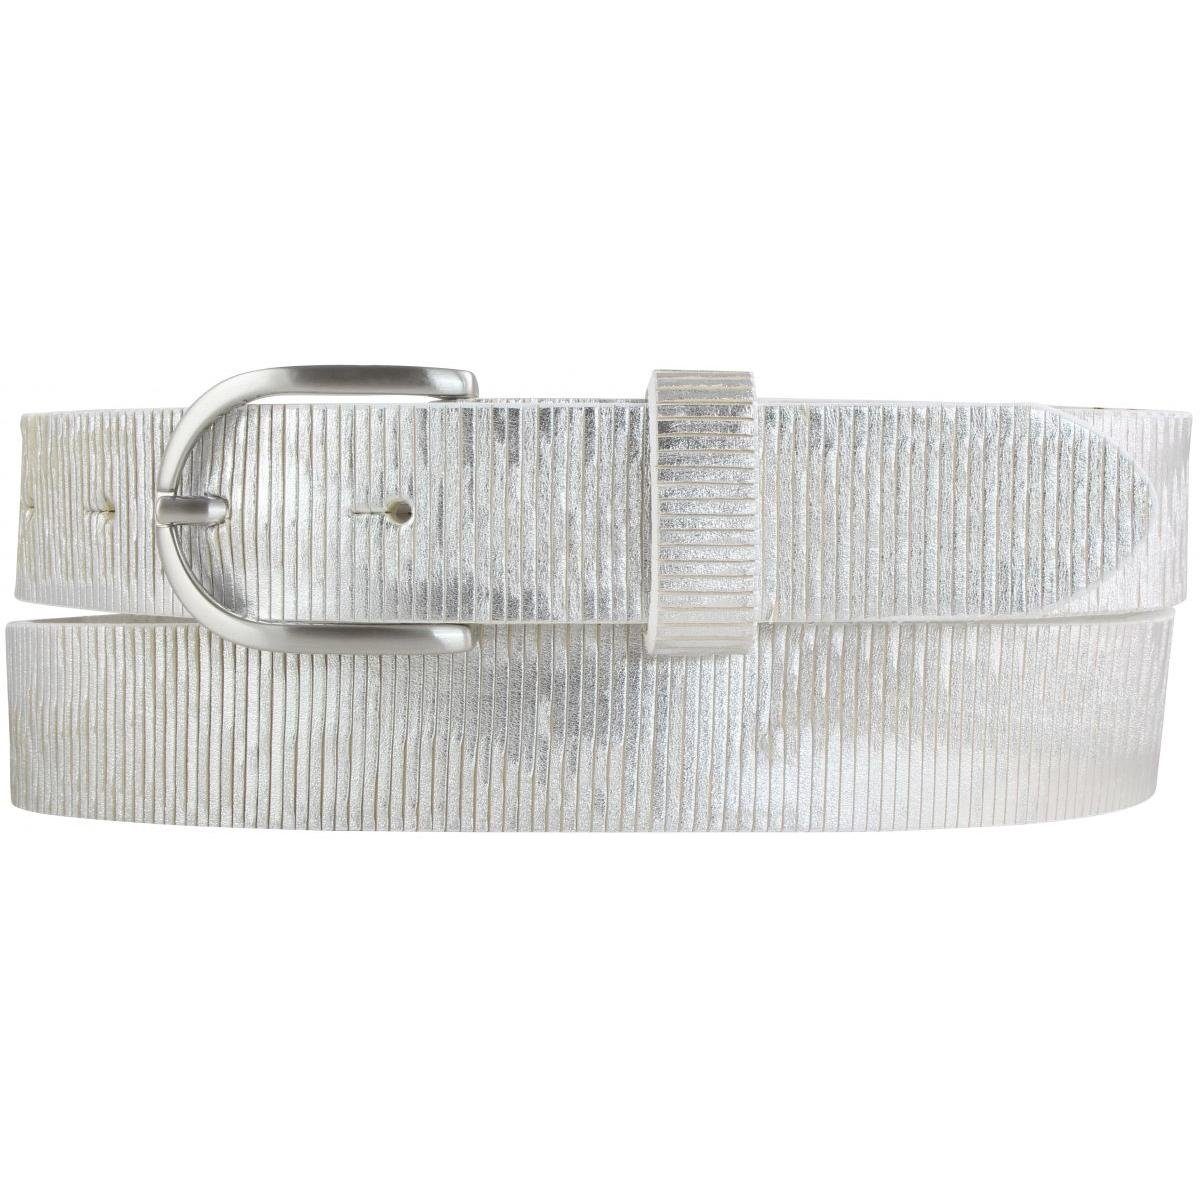 BELTINGER Ledergürtel Damengürtel Metall-Optik aus Vollrindleder 3 cm - Damen-Gürtel Metalli Weiß, Silber